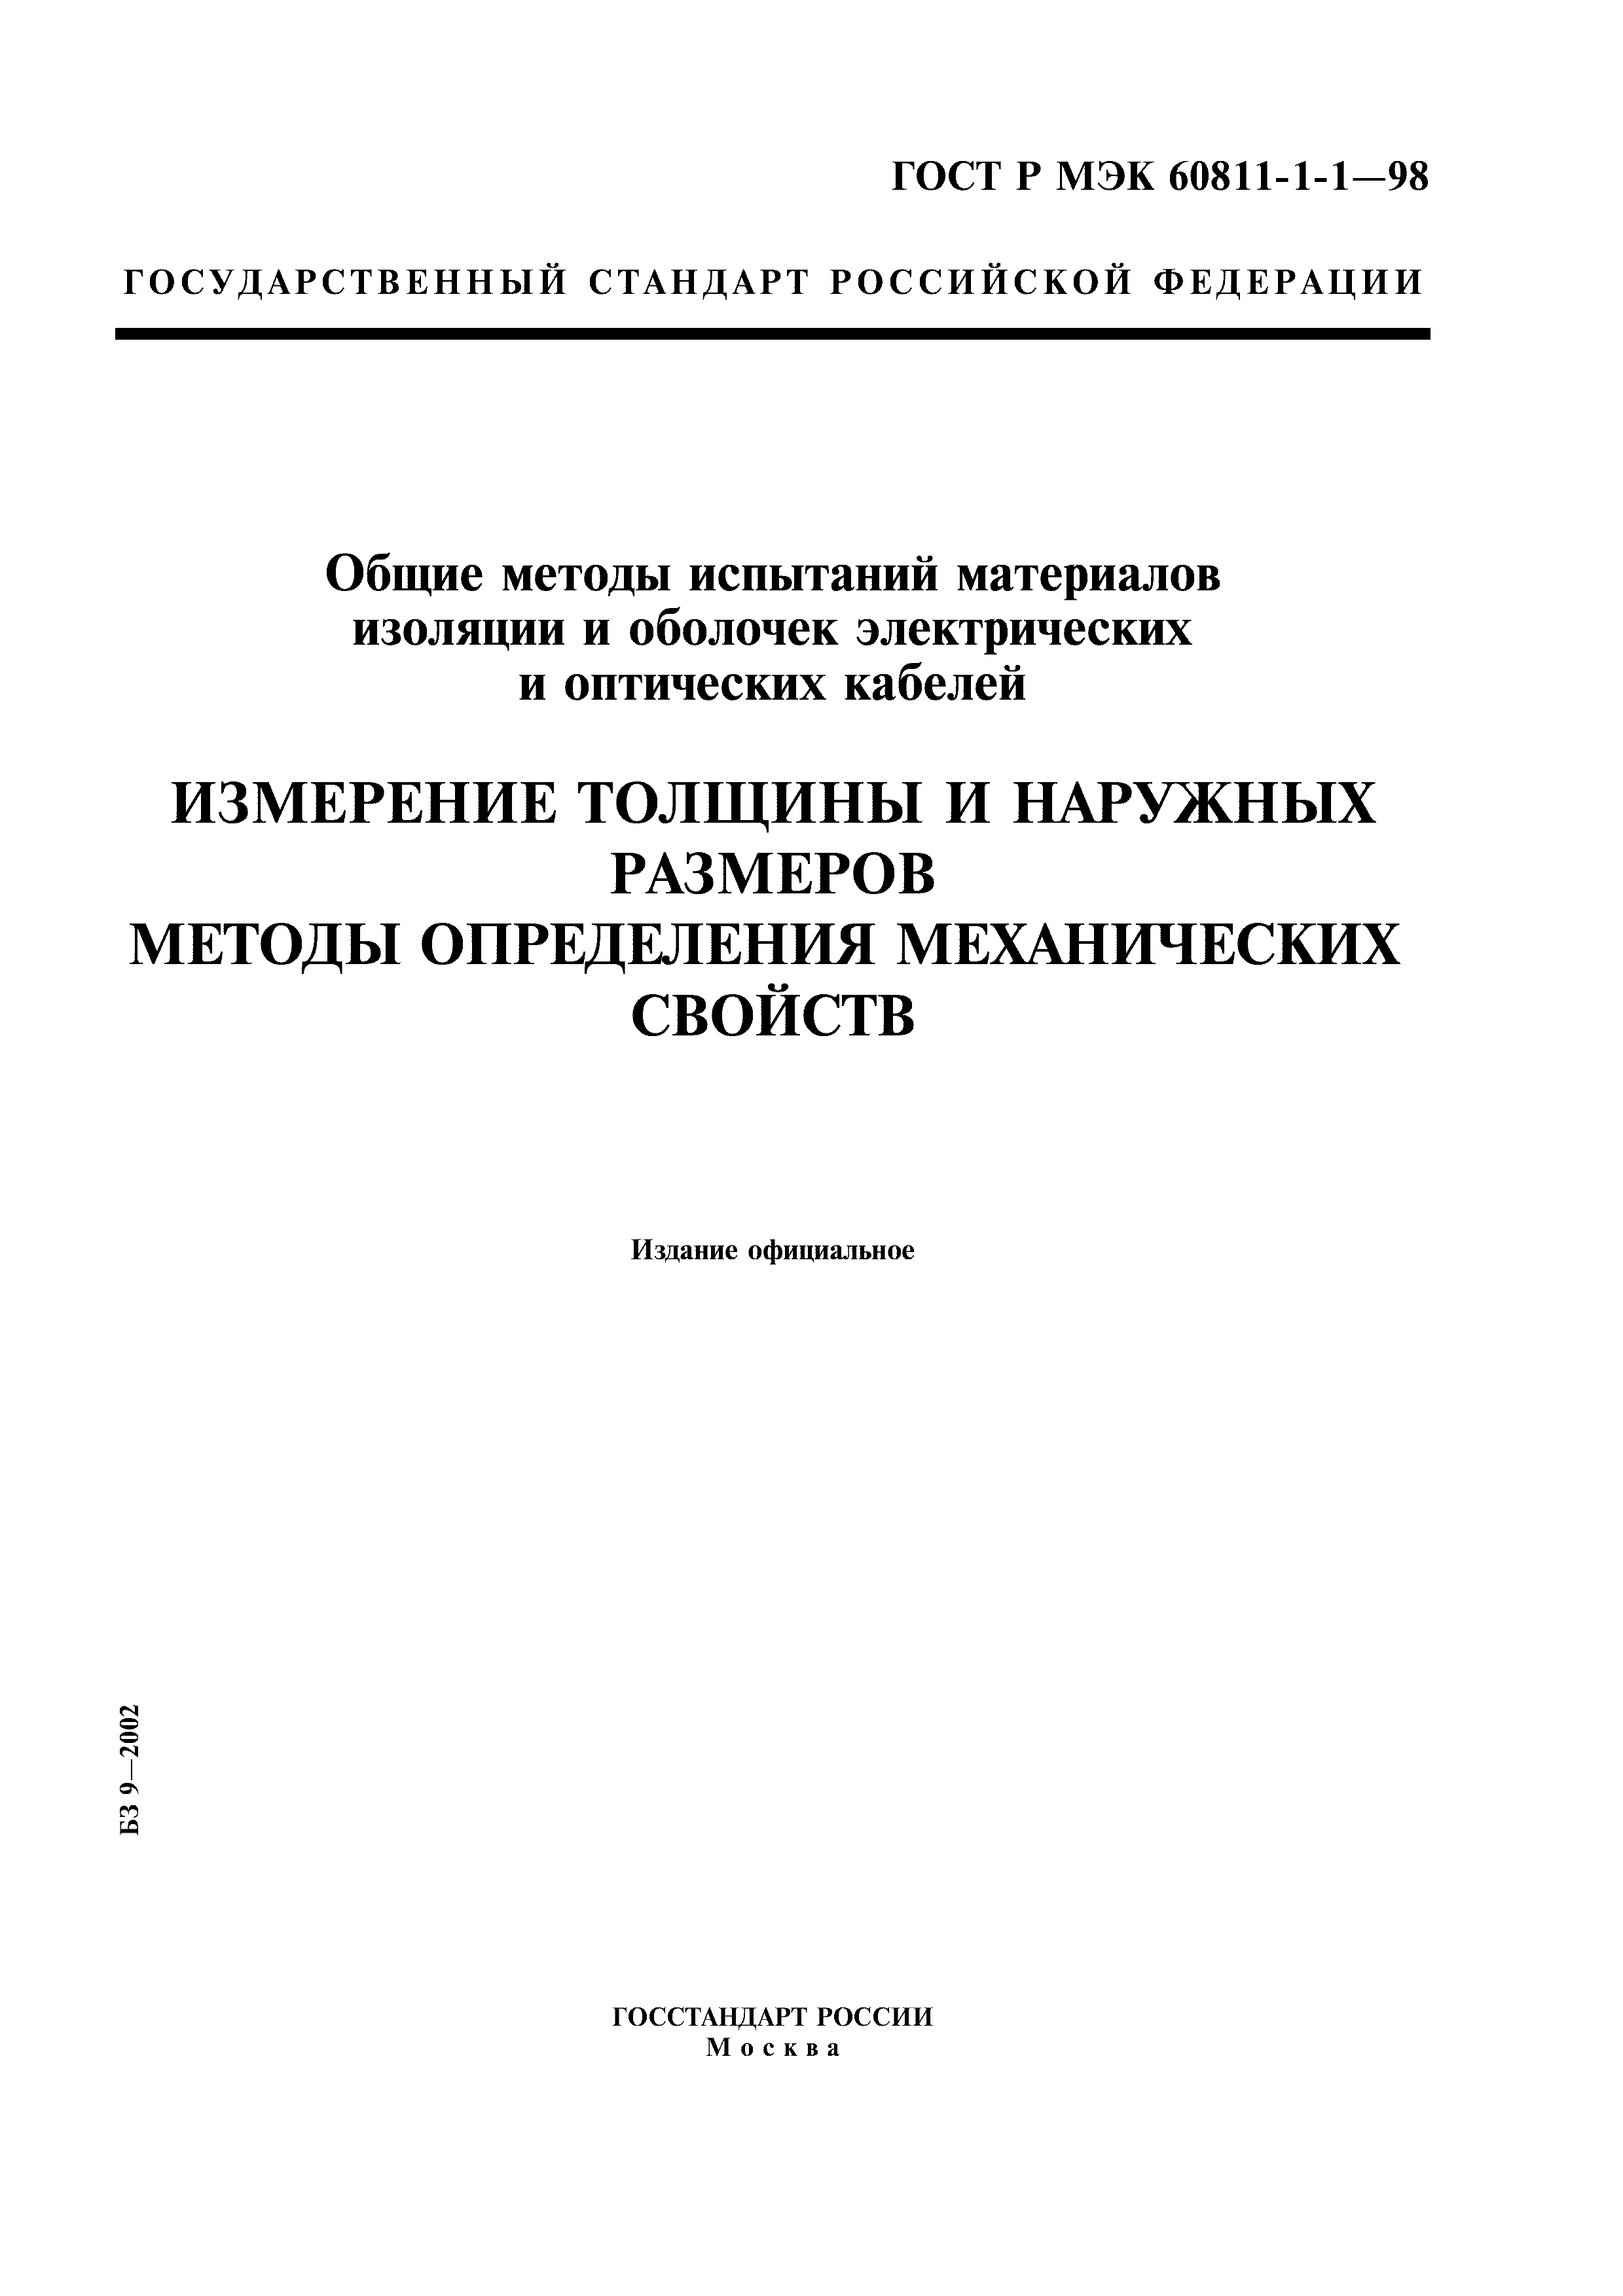 ГОСТ Р МЭК 60811-1-1-98